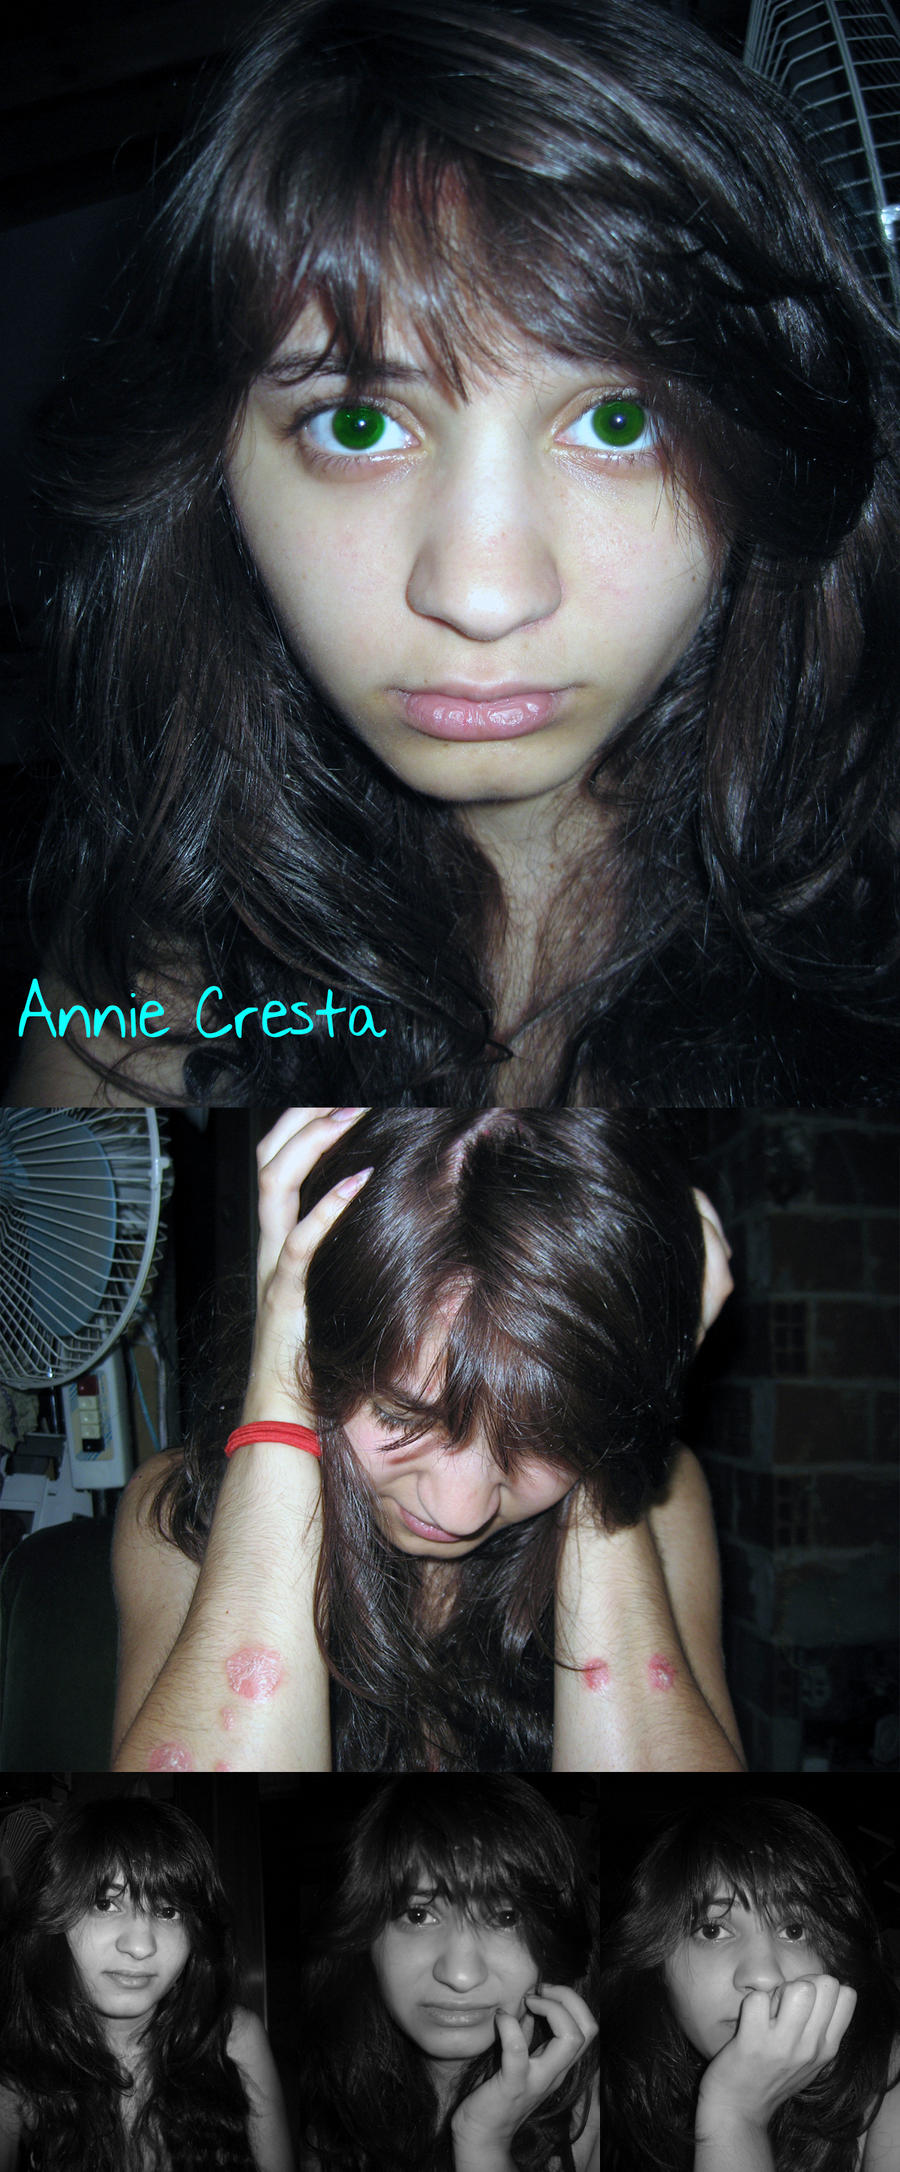 Annie Cresta